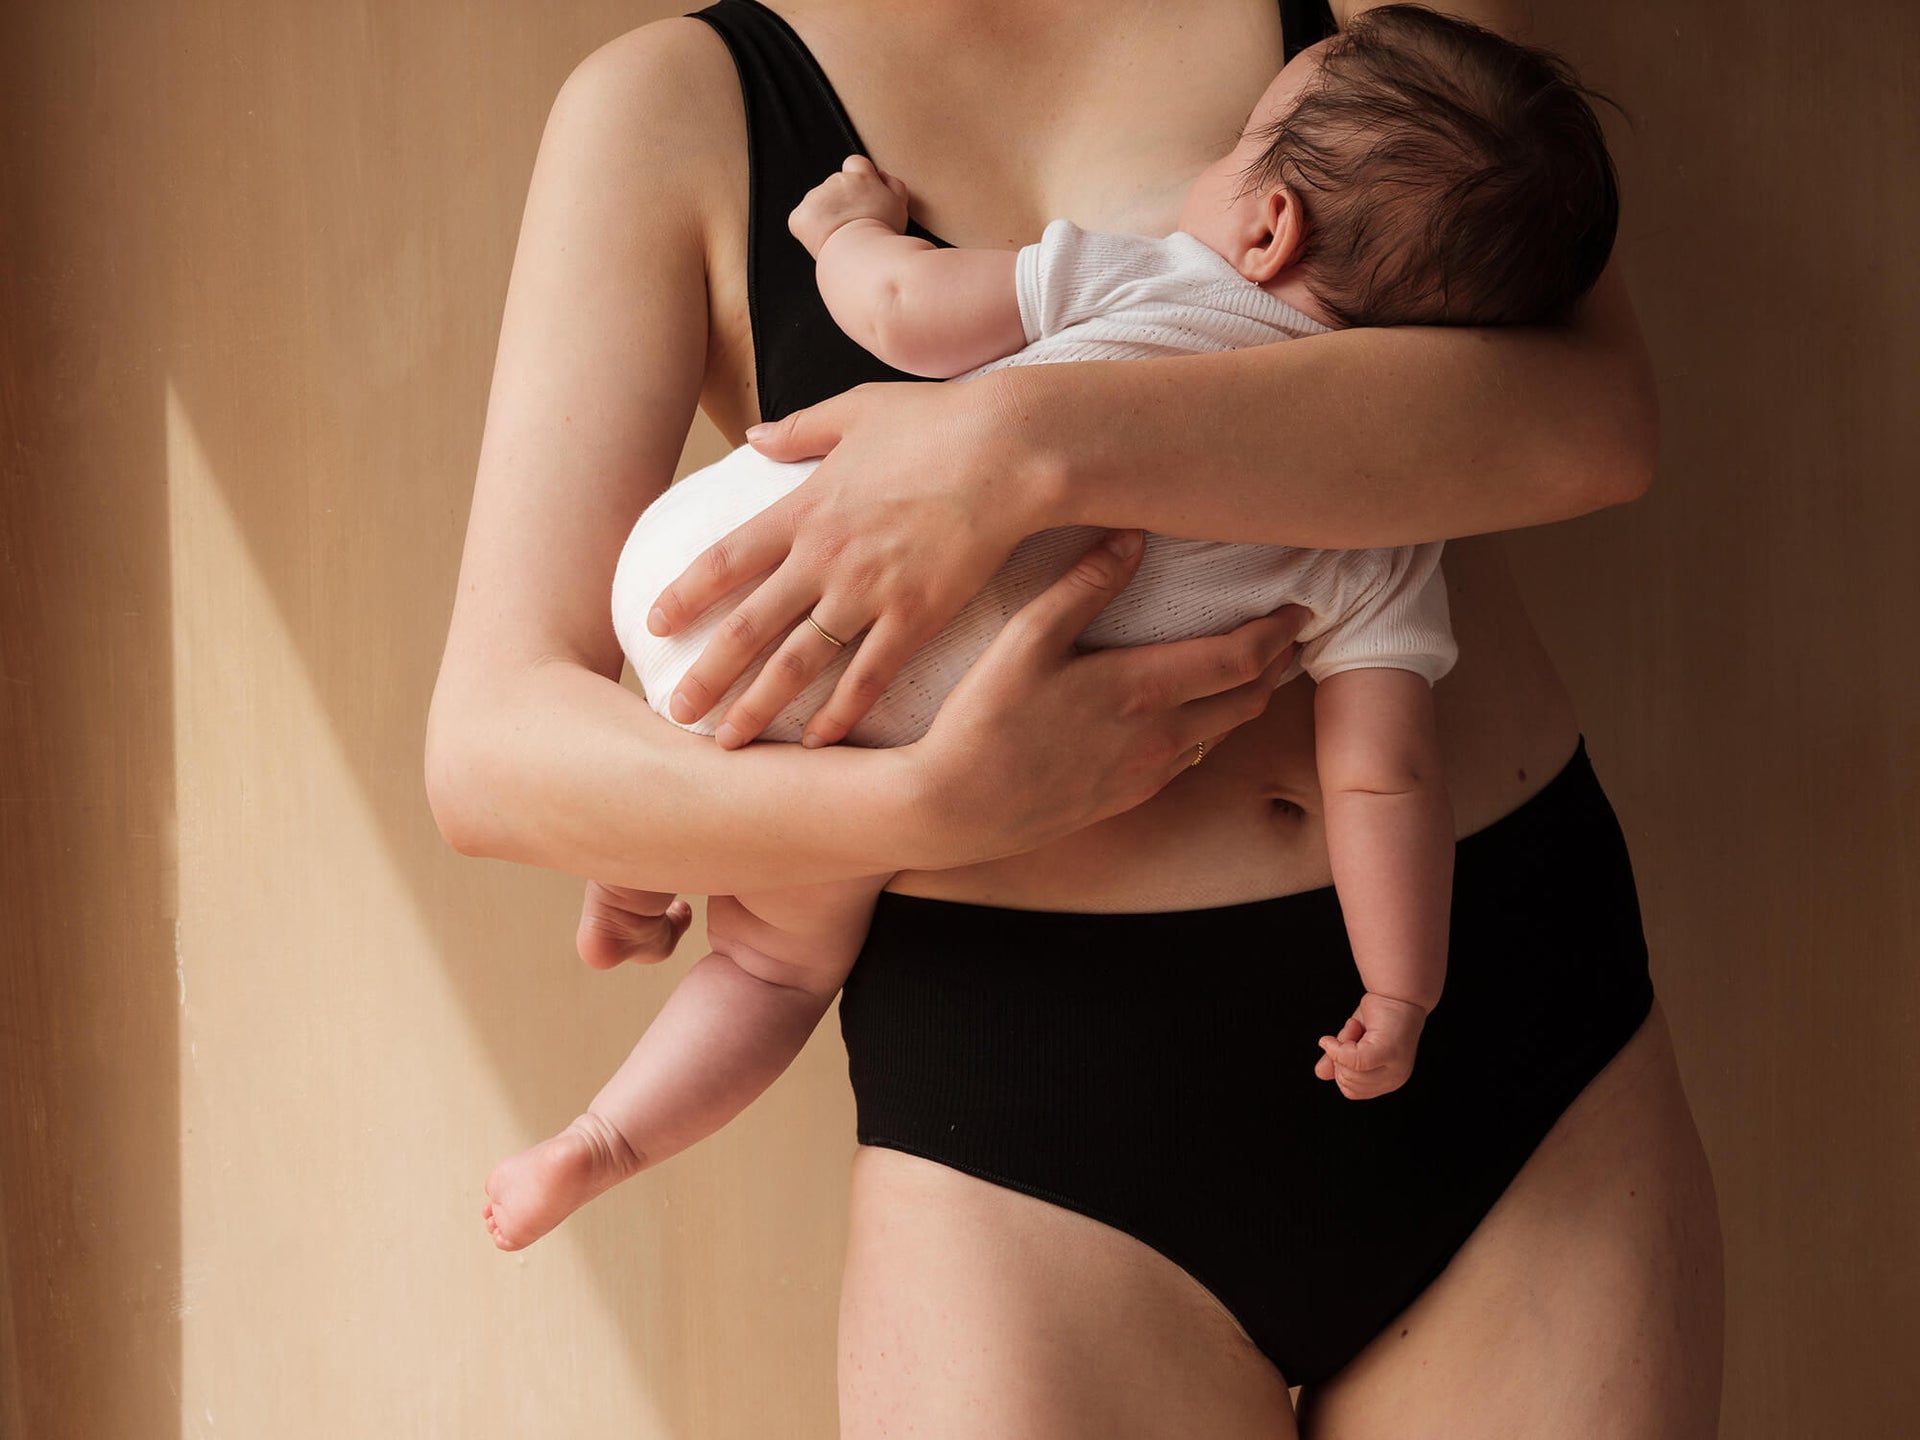 Jorgen House black support briefs on female body breastfeeding her baby